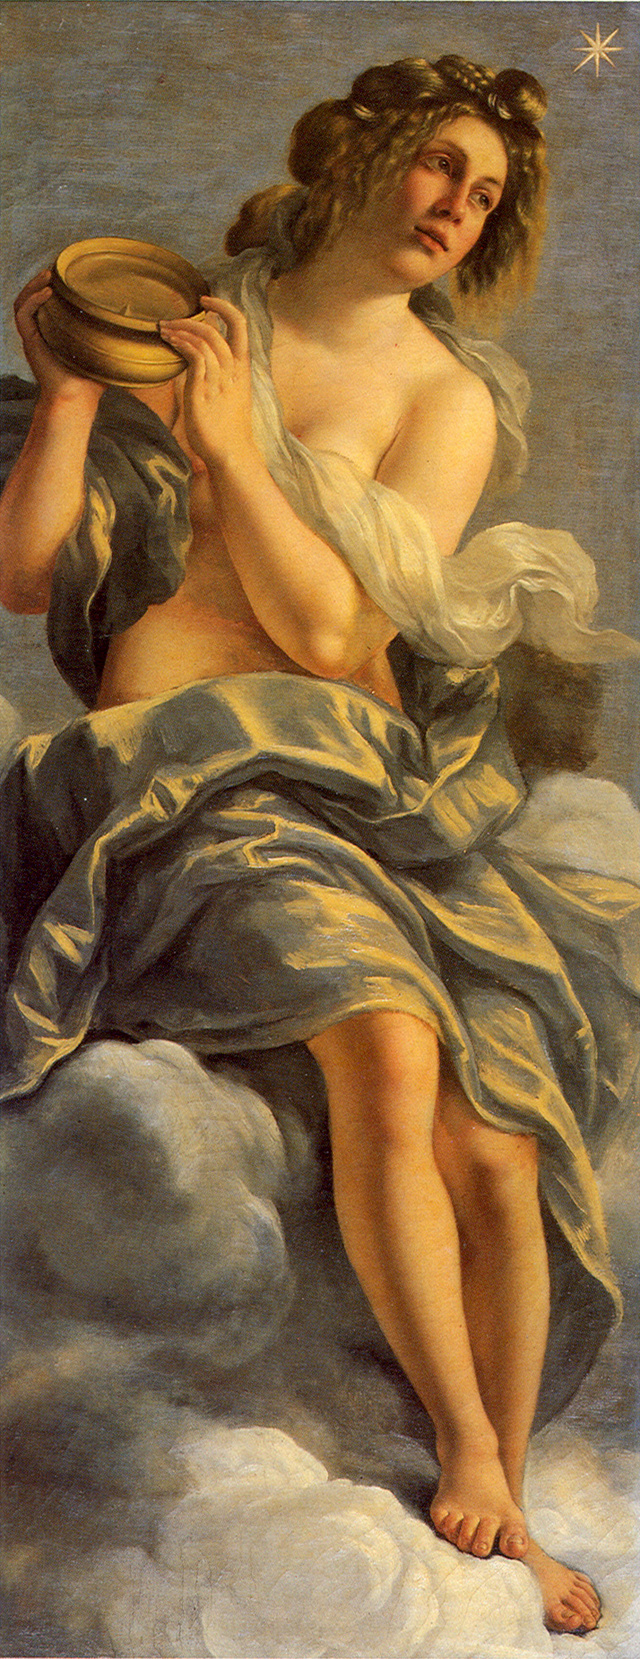 A meztelen nőalakot ábrázoló festményre a cenzúra miatt kerültek a fátylak